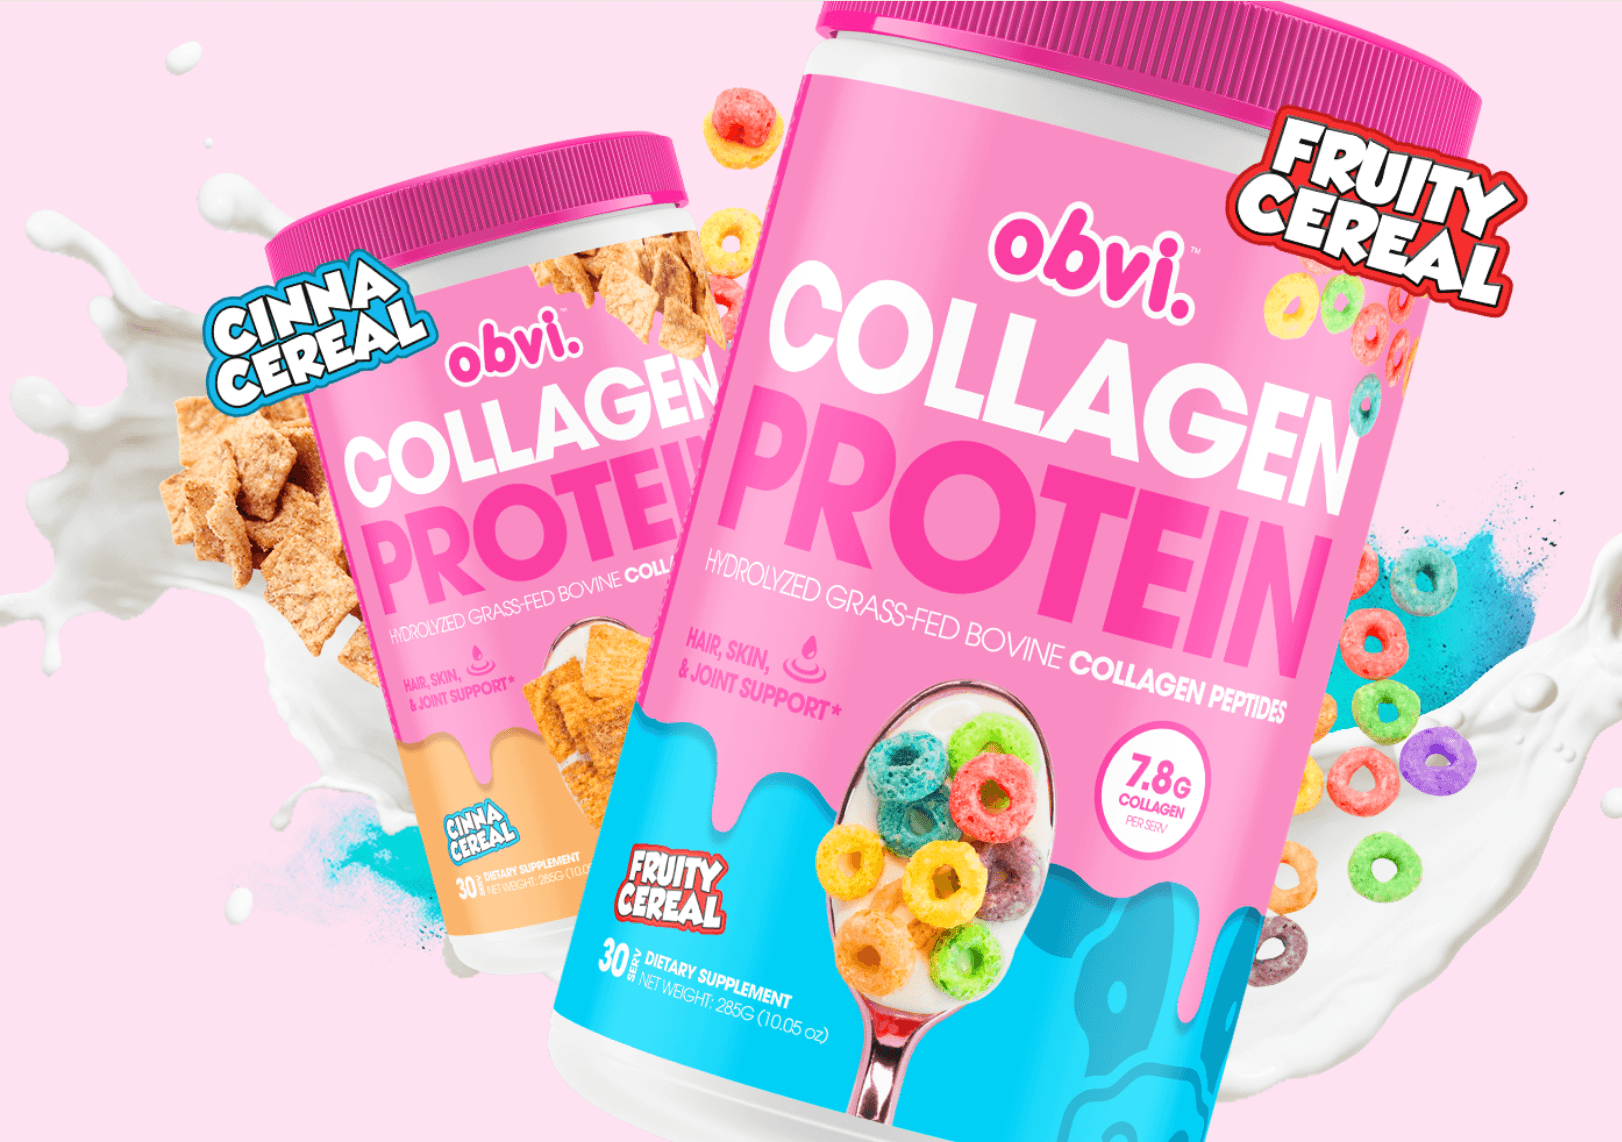 ~obvi. Collagen Protein Powder!